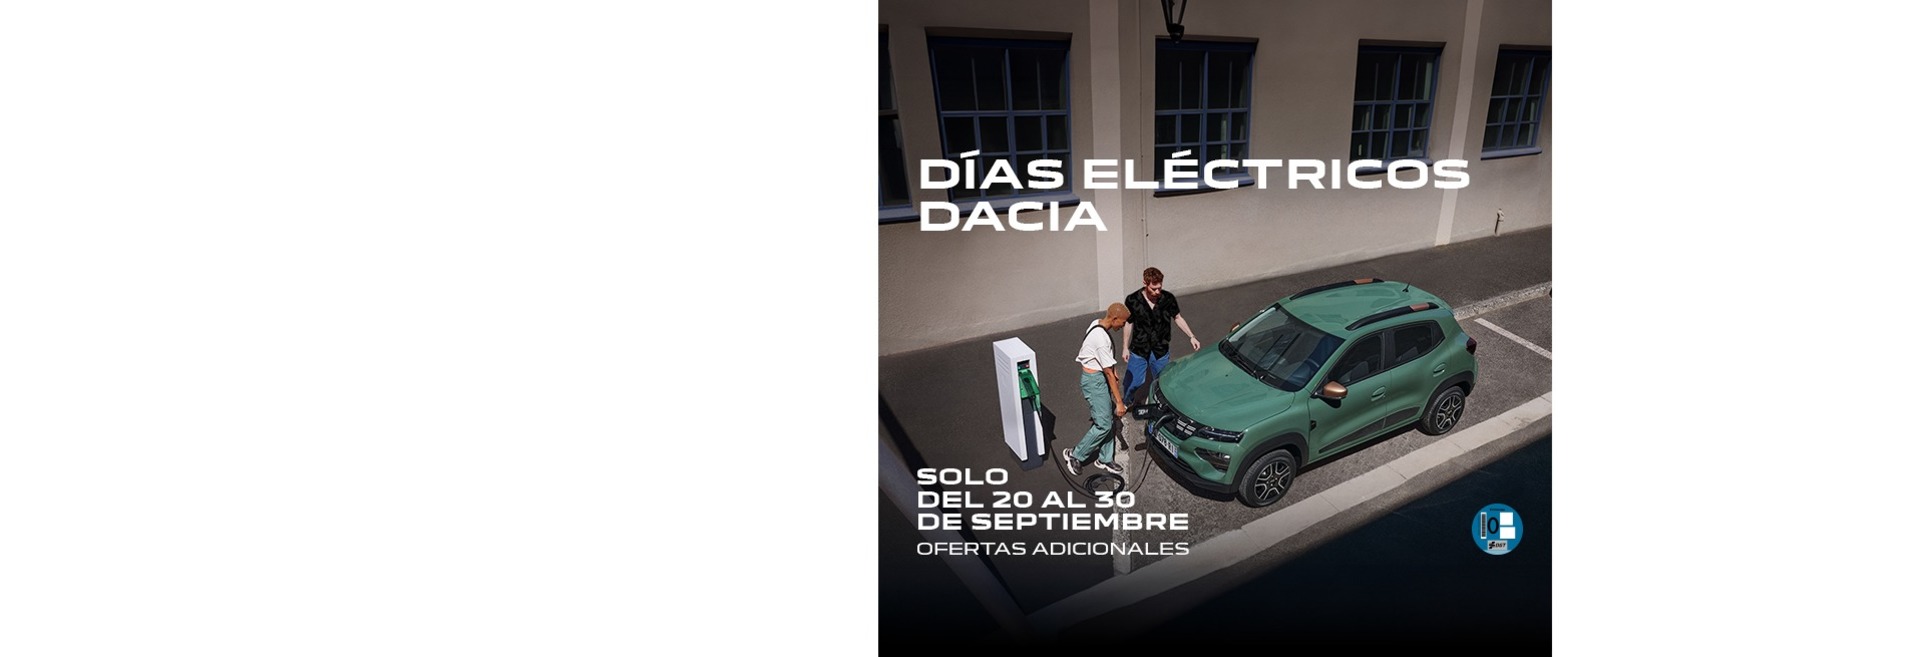 Días eléctricos Dacia